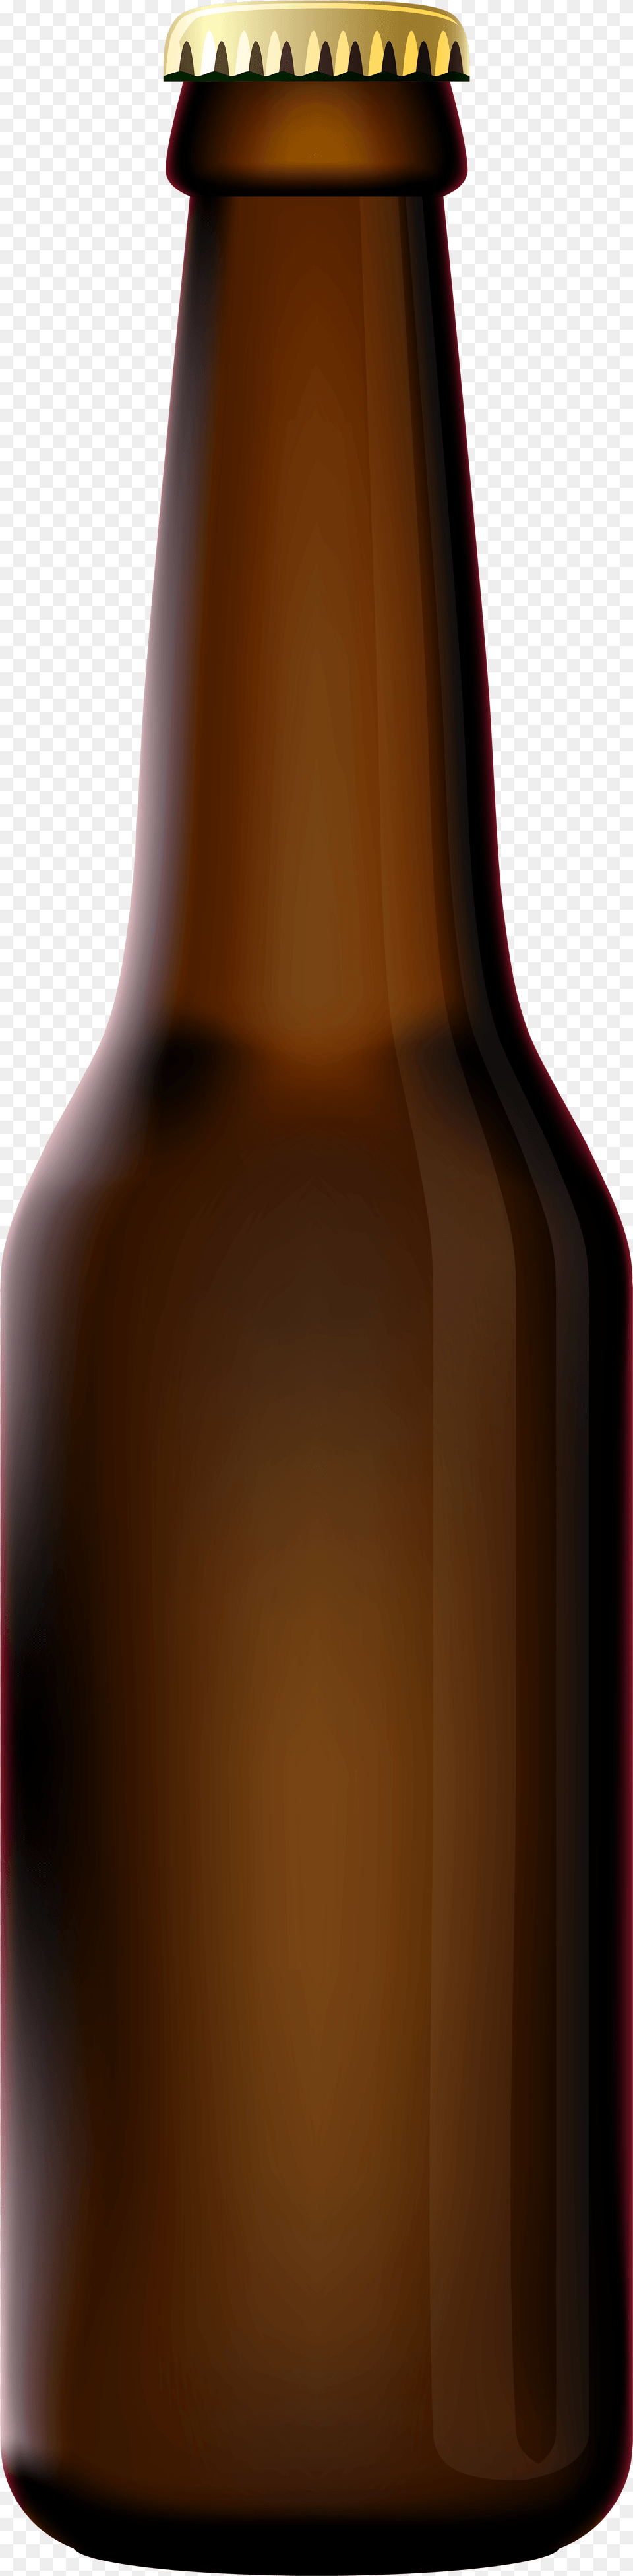 Transparent Beer Bottle, Alcohol, Beer Bottle, Beverage, Liquor Free Png